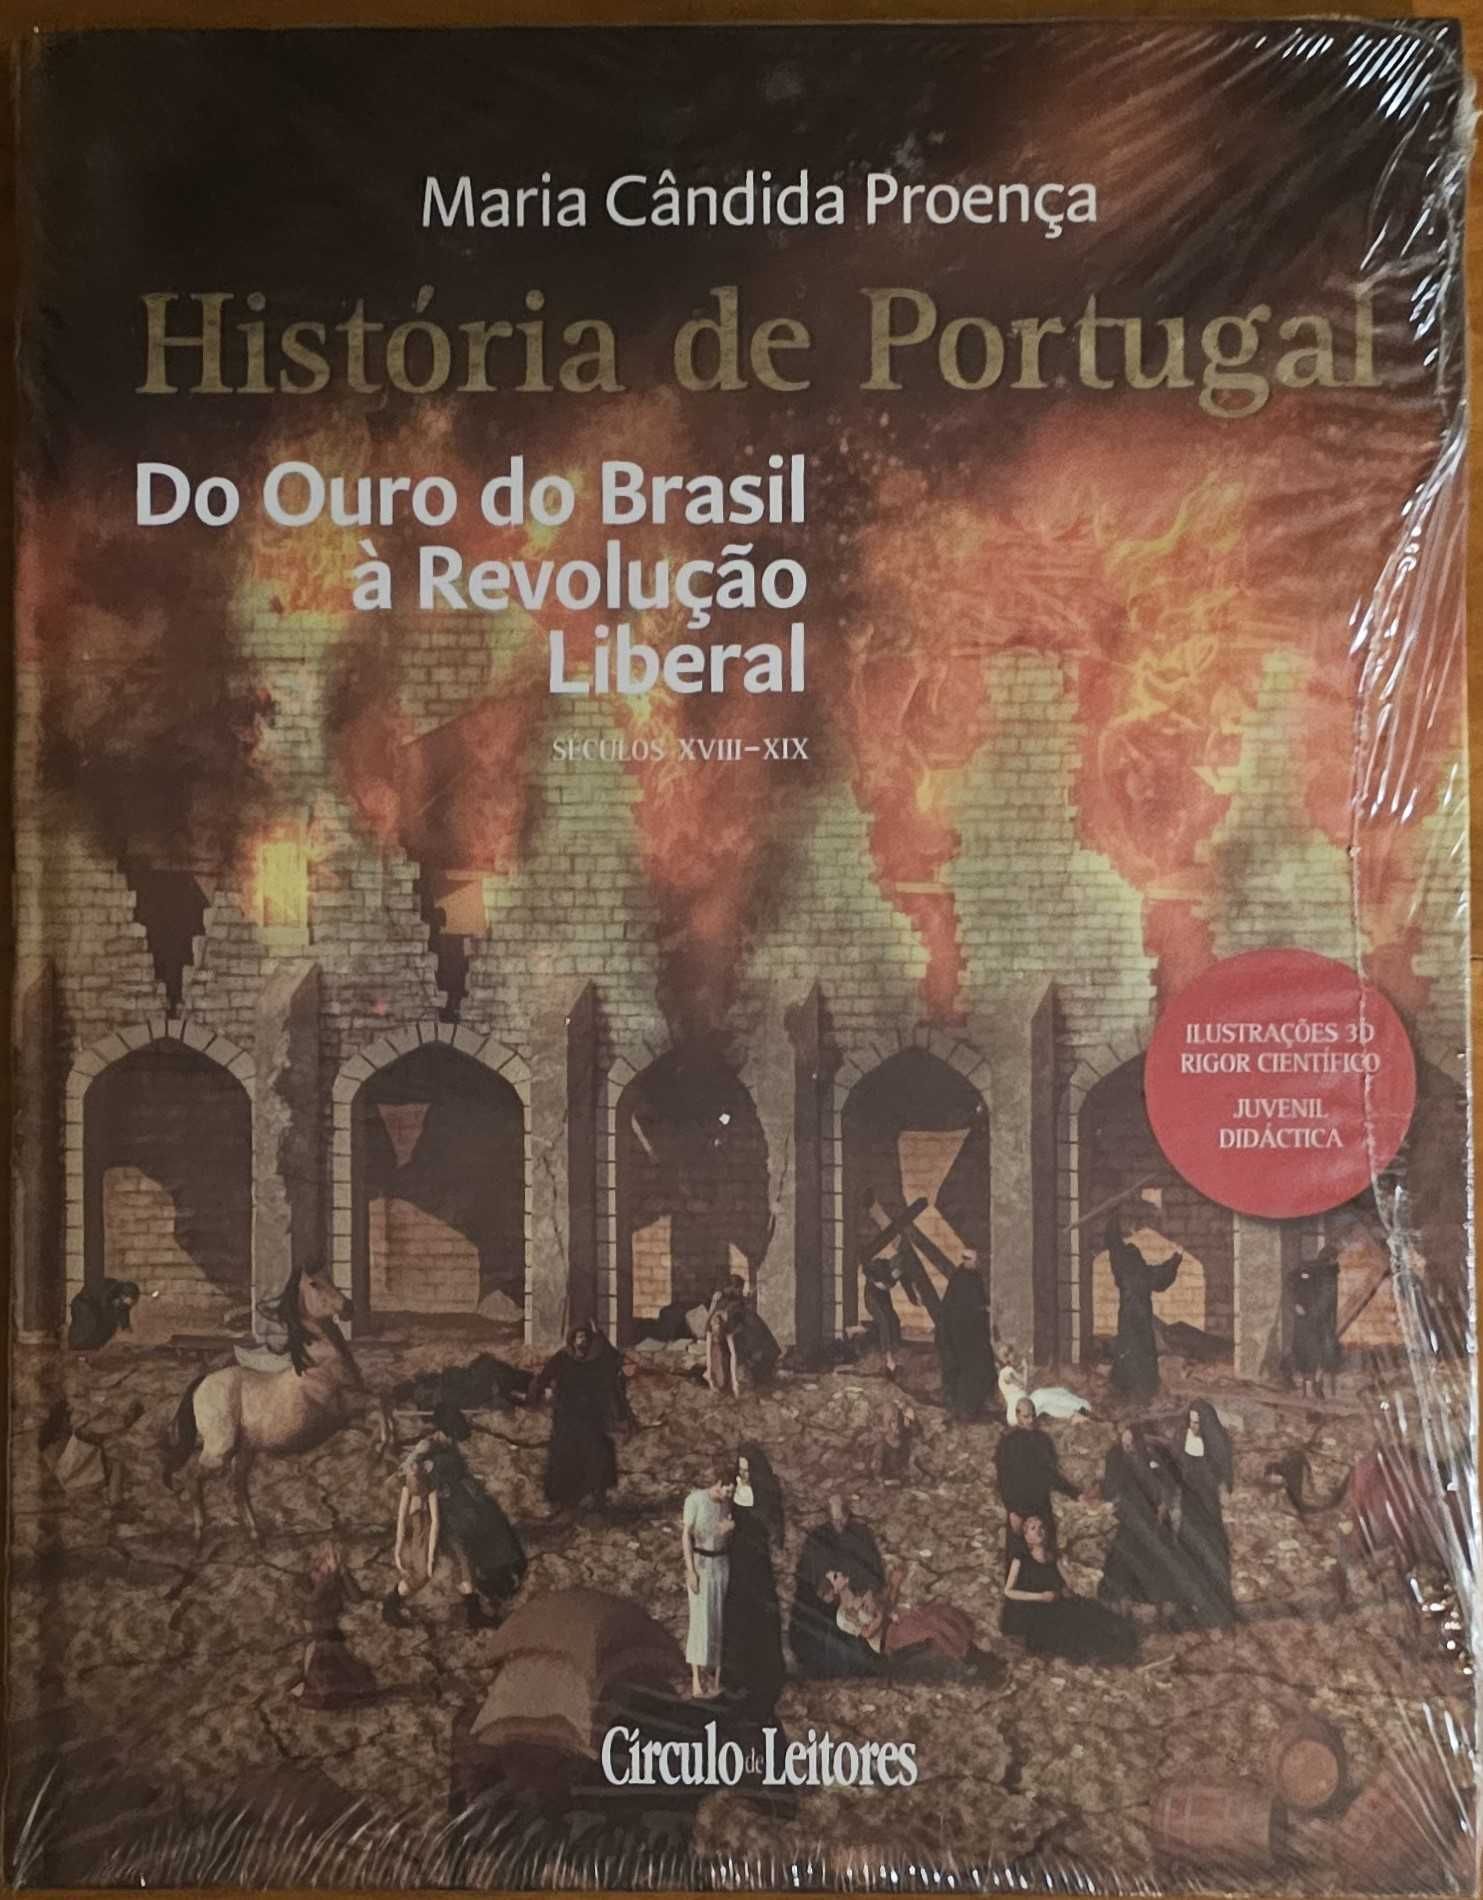 HISTÓRIA DE PORTUGAL (com ilustrações 3D) de Maria Cândida Proença